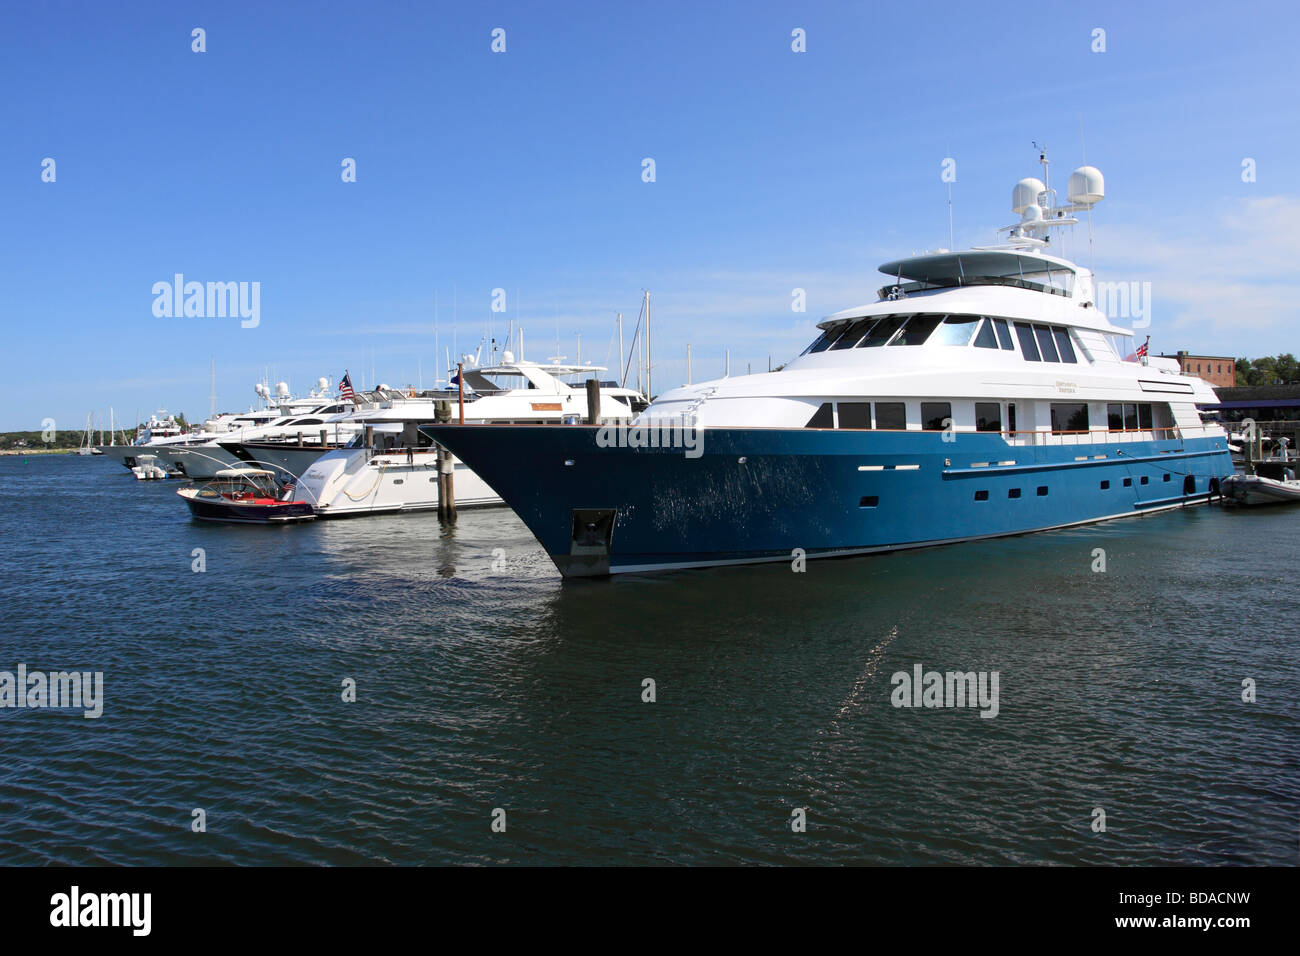 Yachts in marina, Sag Harbor, Long Island NY Stock Photo